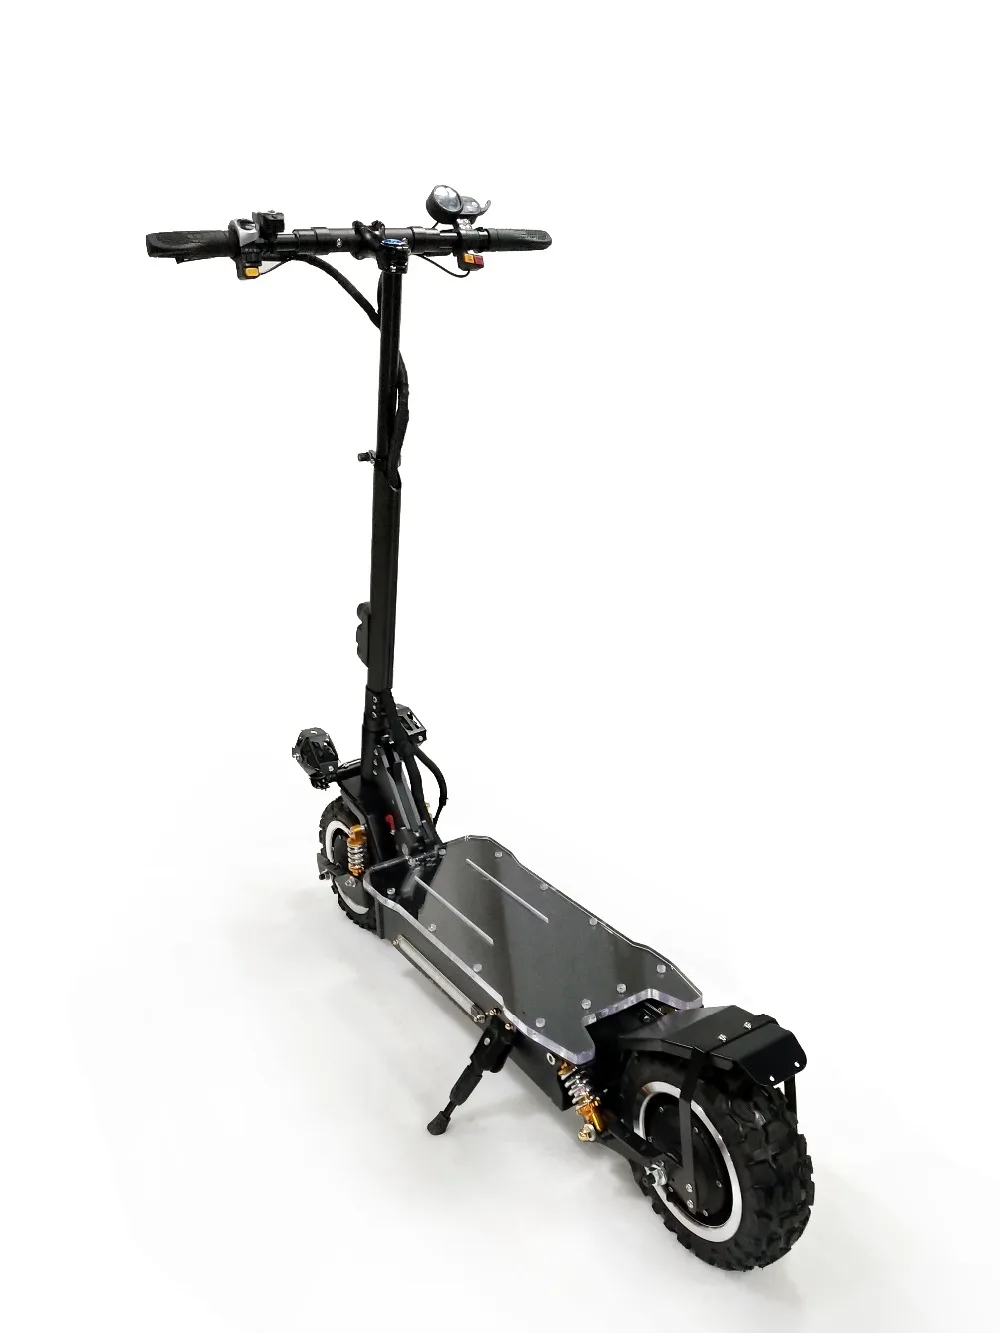 JS 80 км/ч 3200 Вт 60 в электрический скутер 1" внедорожный складной водонепроницаемый samsung E скутер Hoverboad скейтборд patinete eletrico